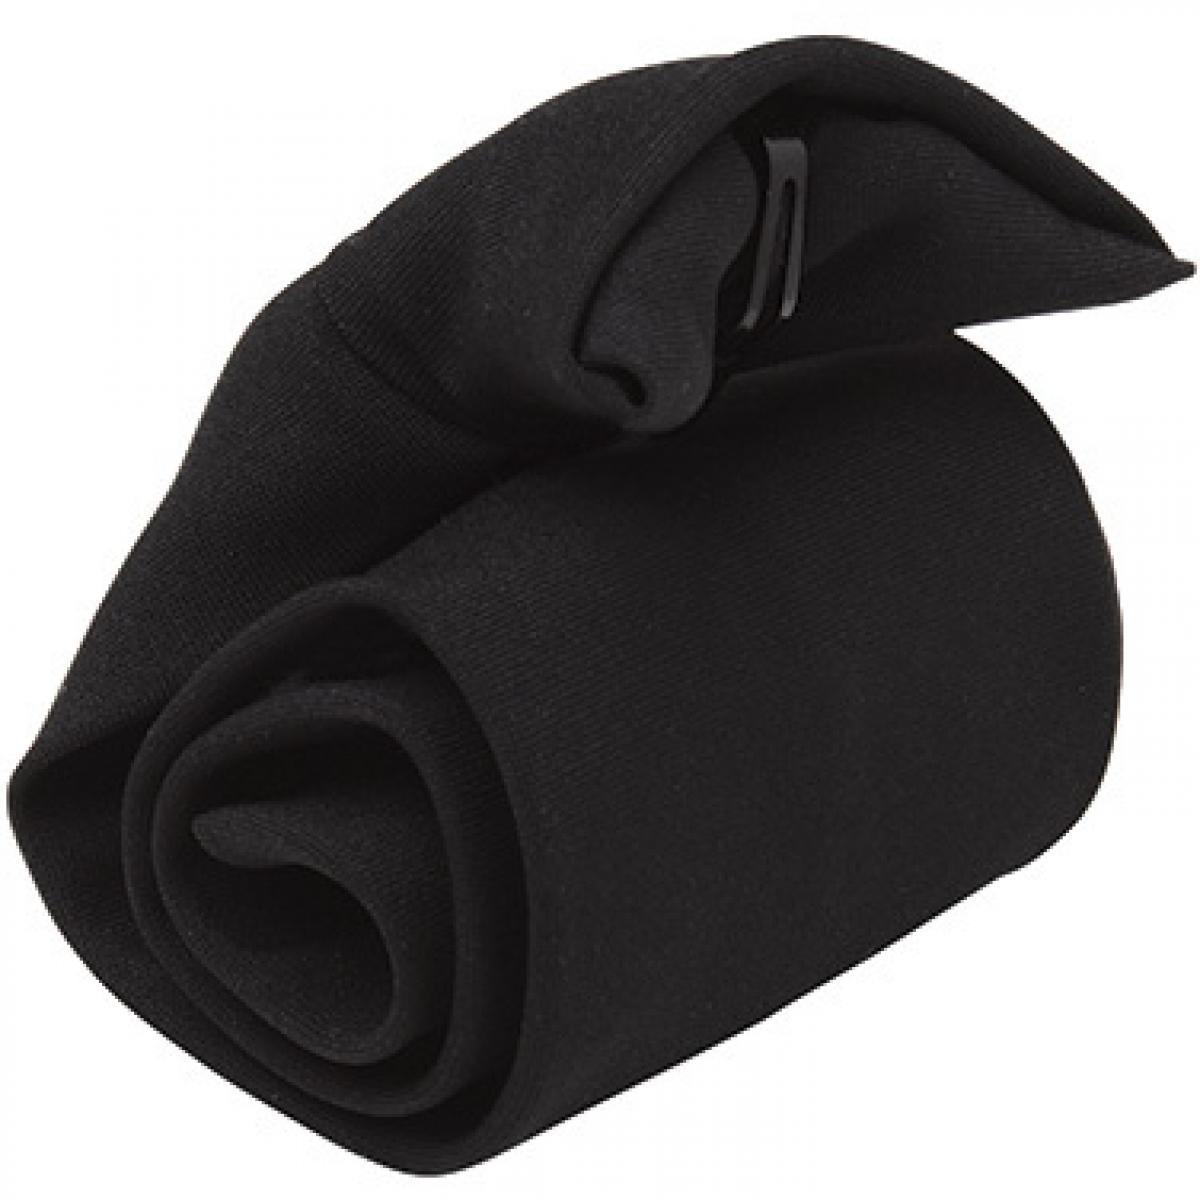 Hersteller: Premier Workwear Herstellernummer: PR710 Artikelbezeichnung: ´Clip-on´ Krawatte Farbe: Black